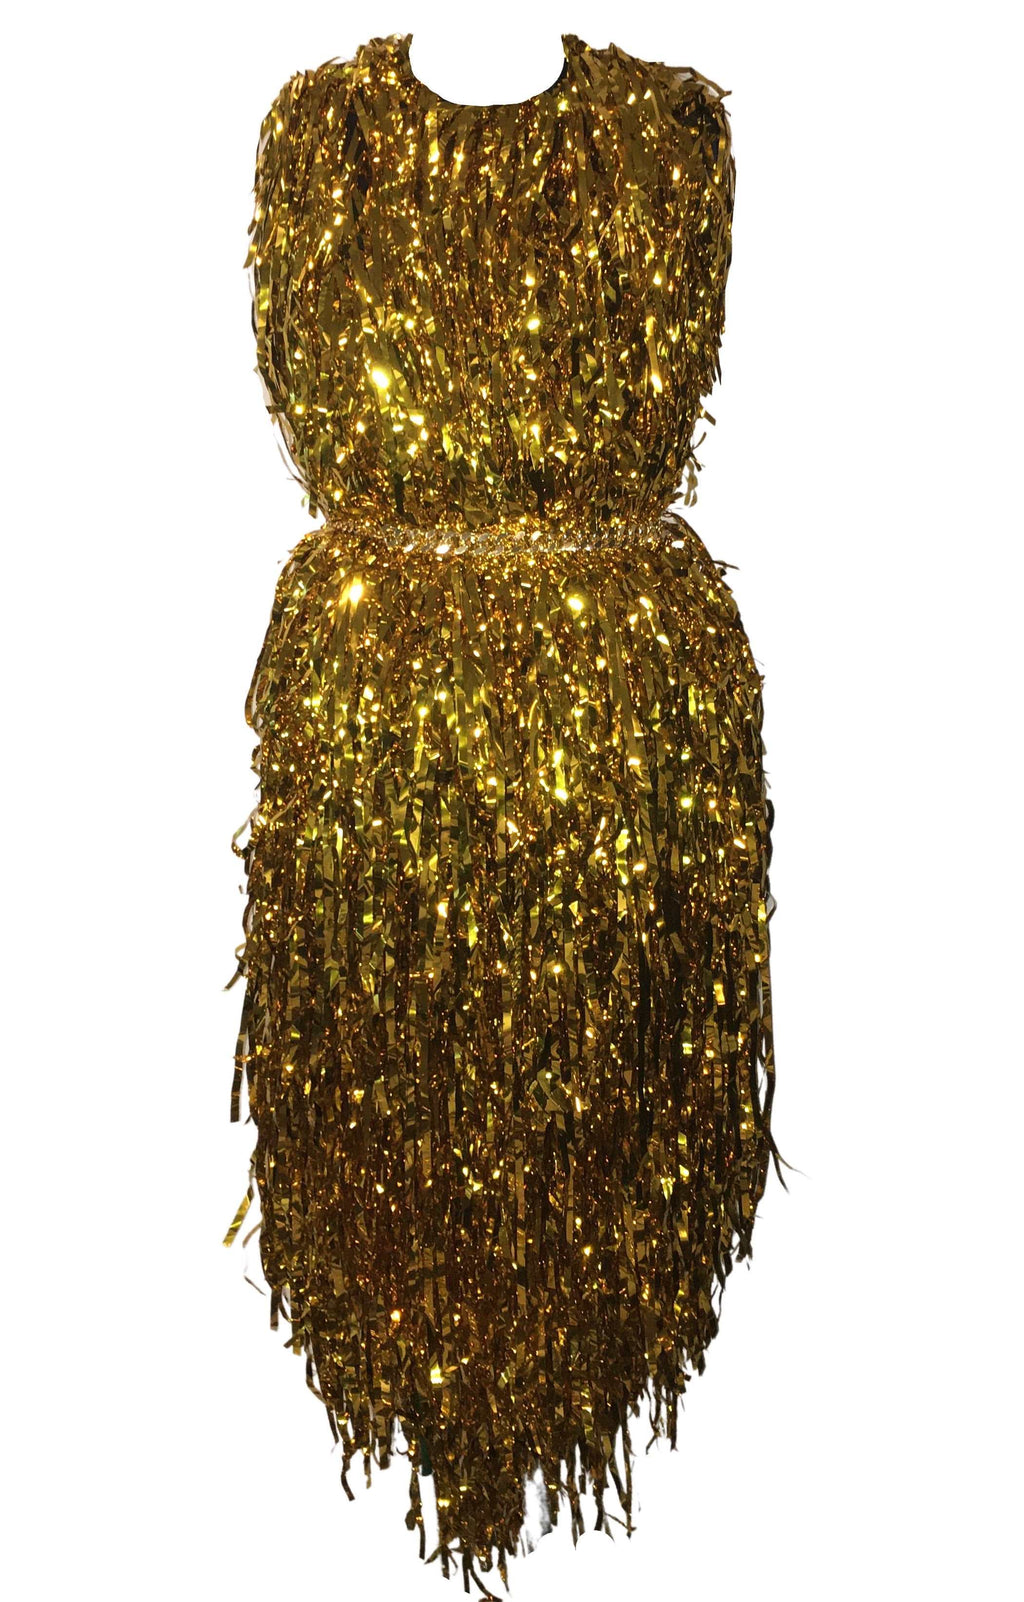 MIDAS - Gold Dress